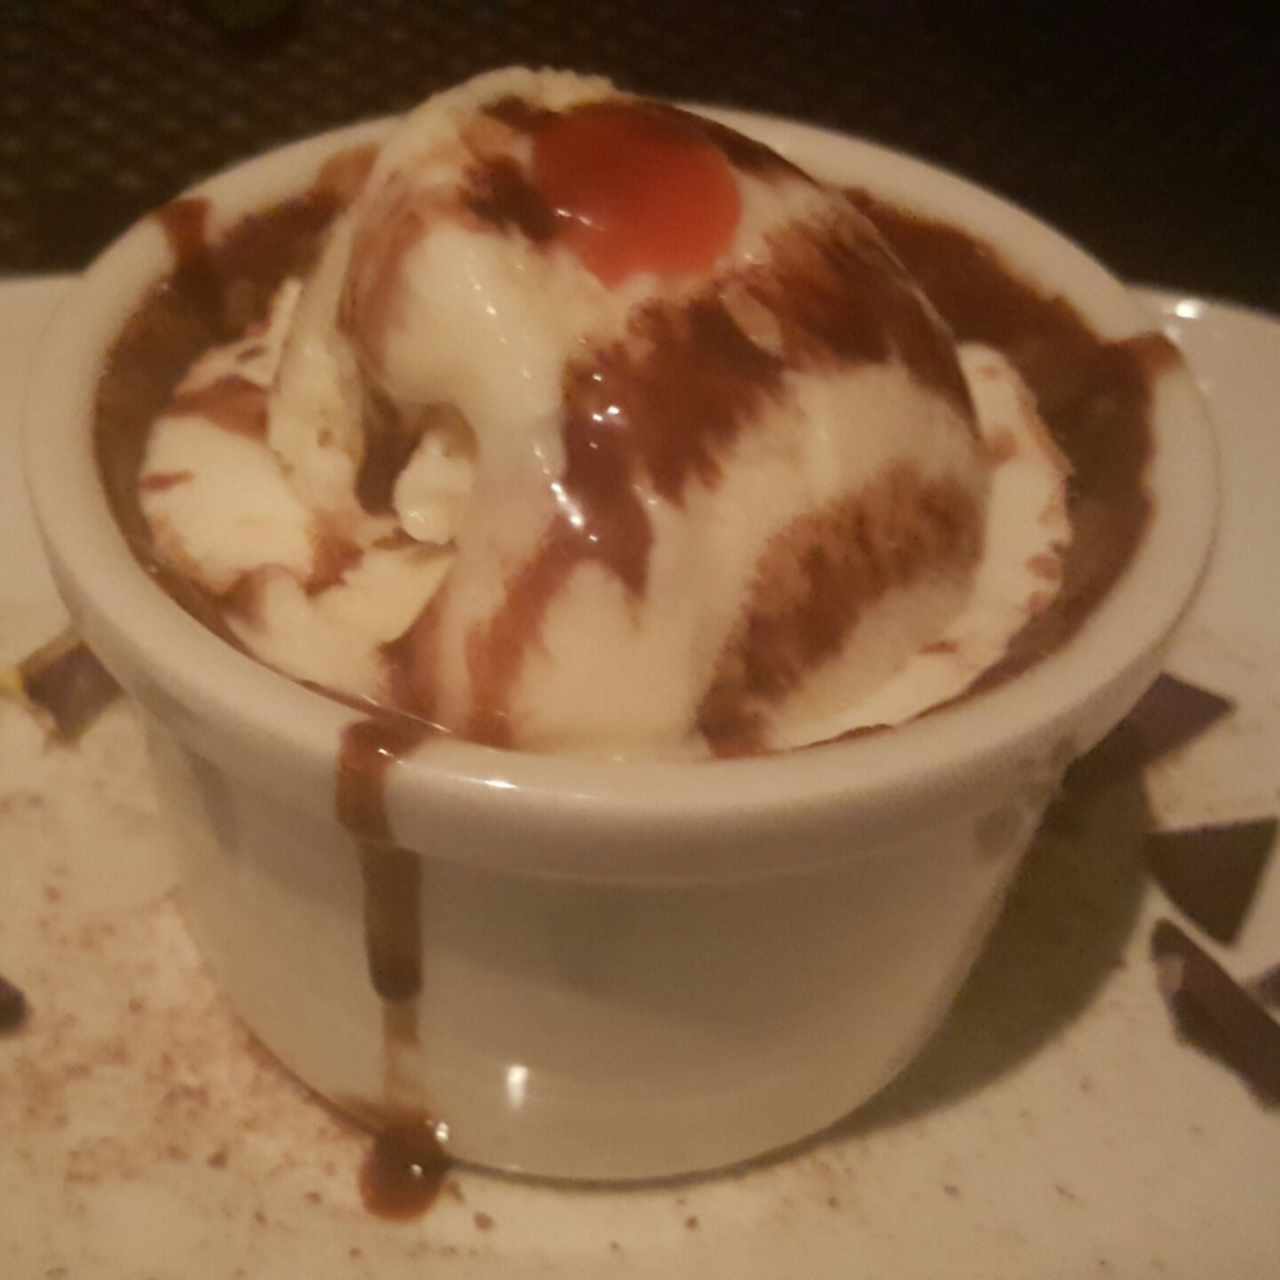 Volcán de chocolate tibio con helado de canela Granclement